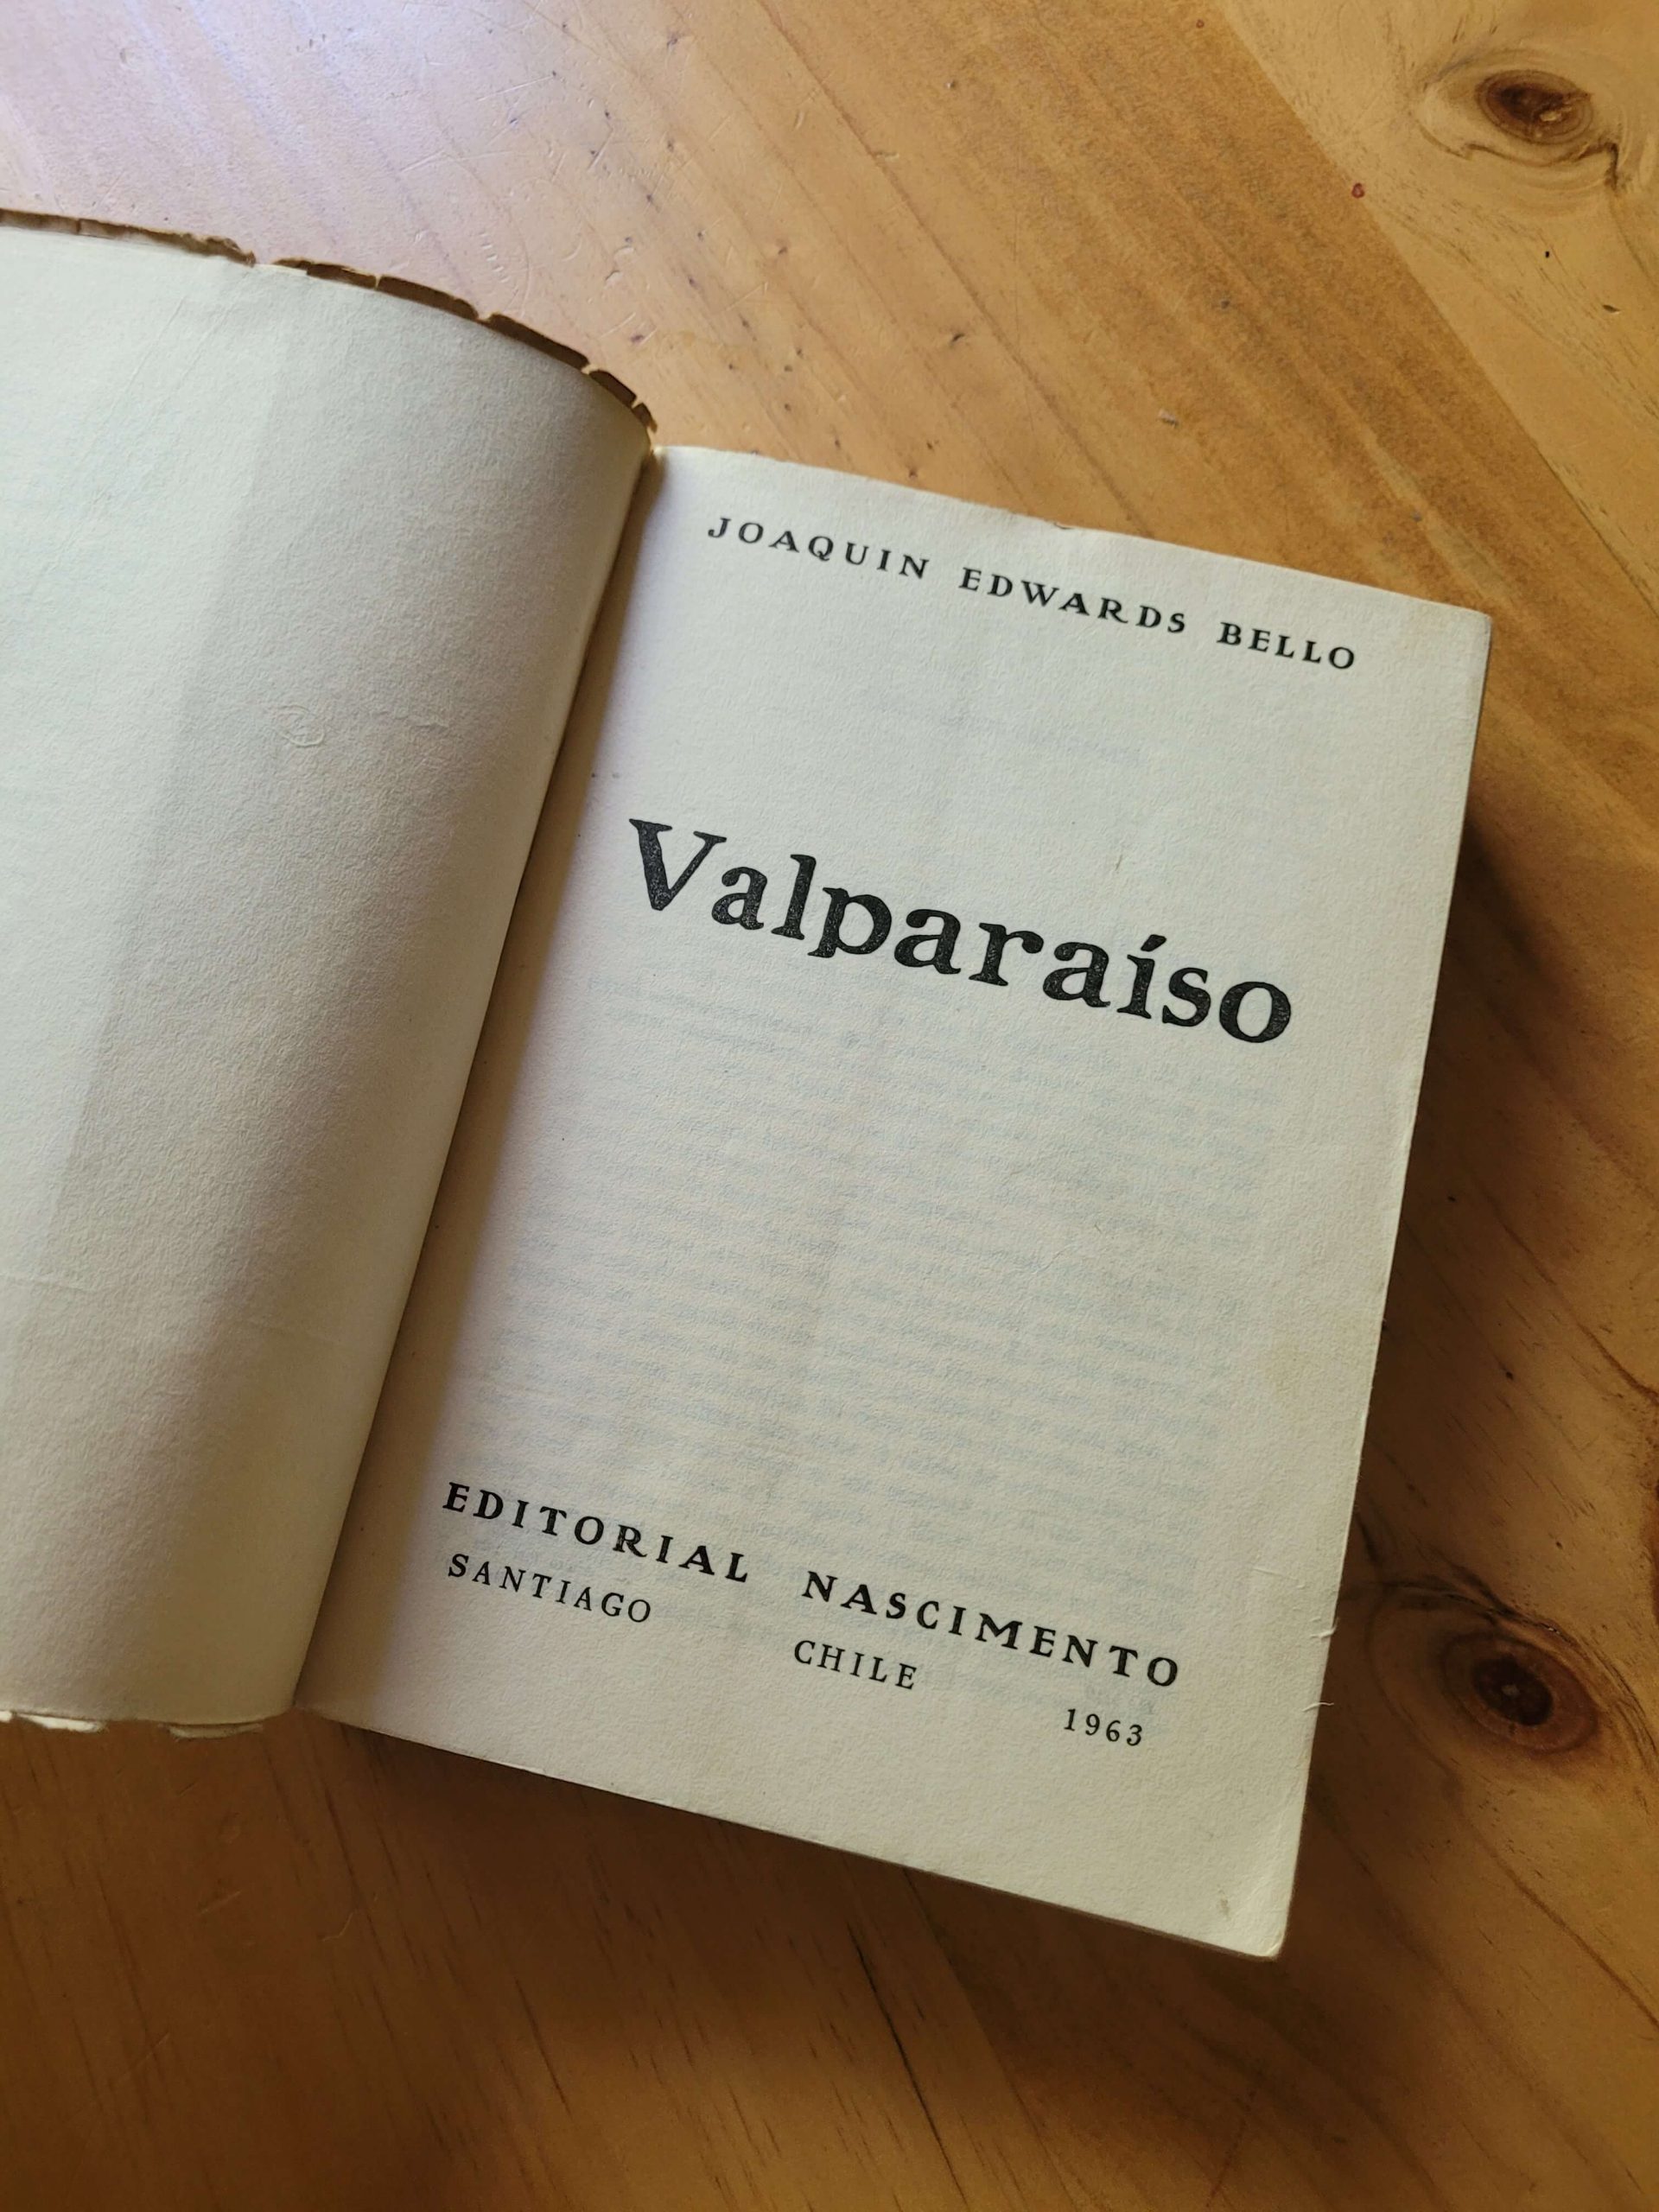 (1963) Libro VALPARAISO de Joaquín Edward Bello (Nascimento)